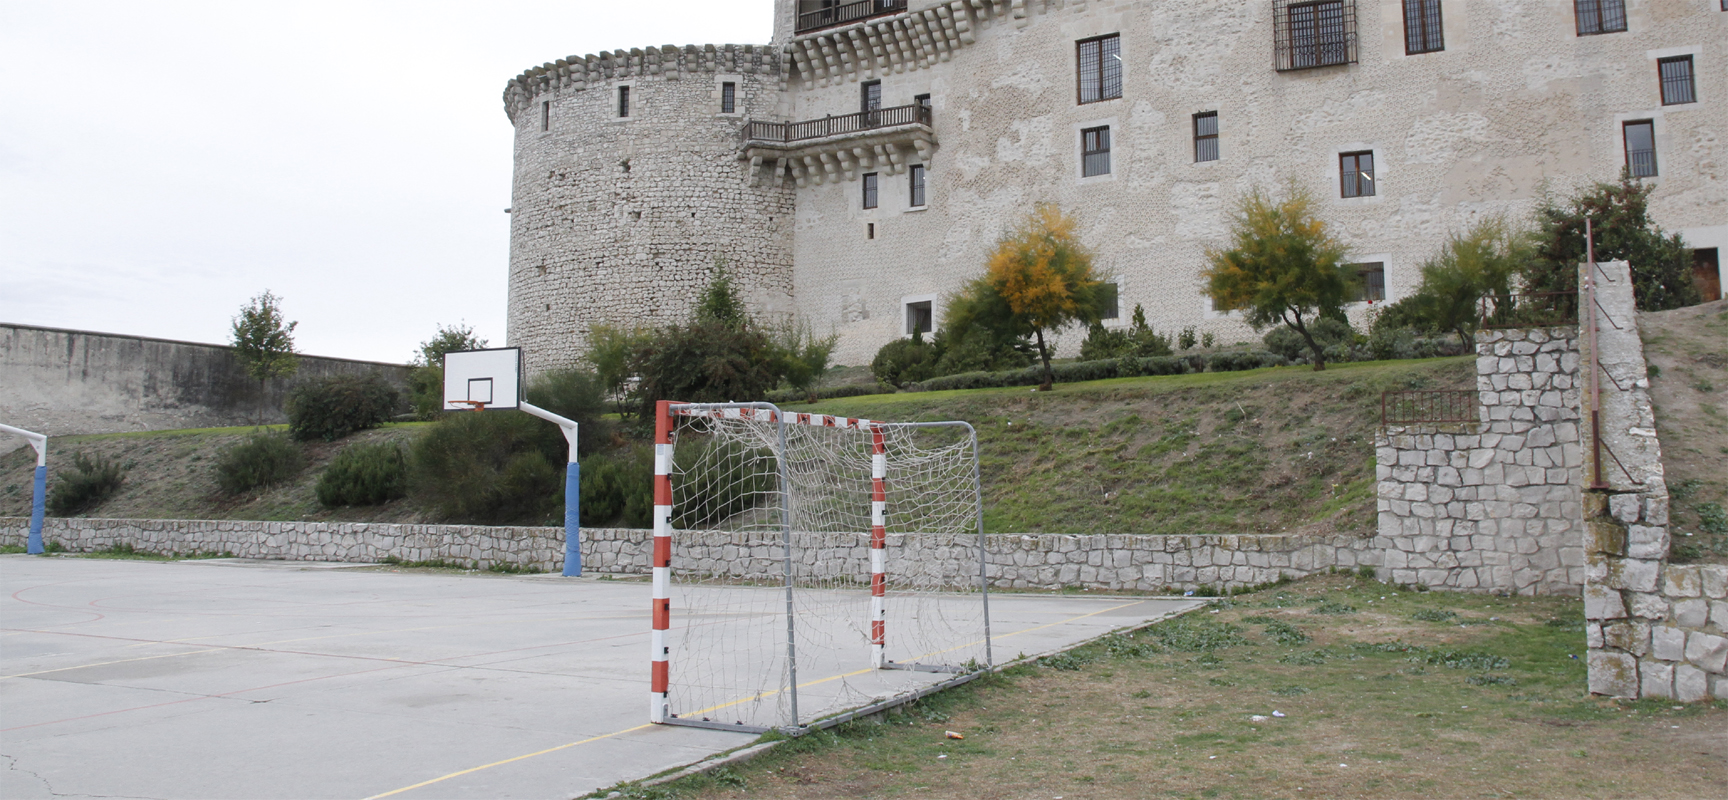 Parte posterior del Castillo donde se encuentra la zona deportiva.